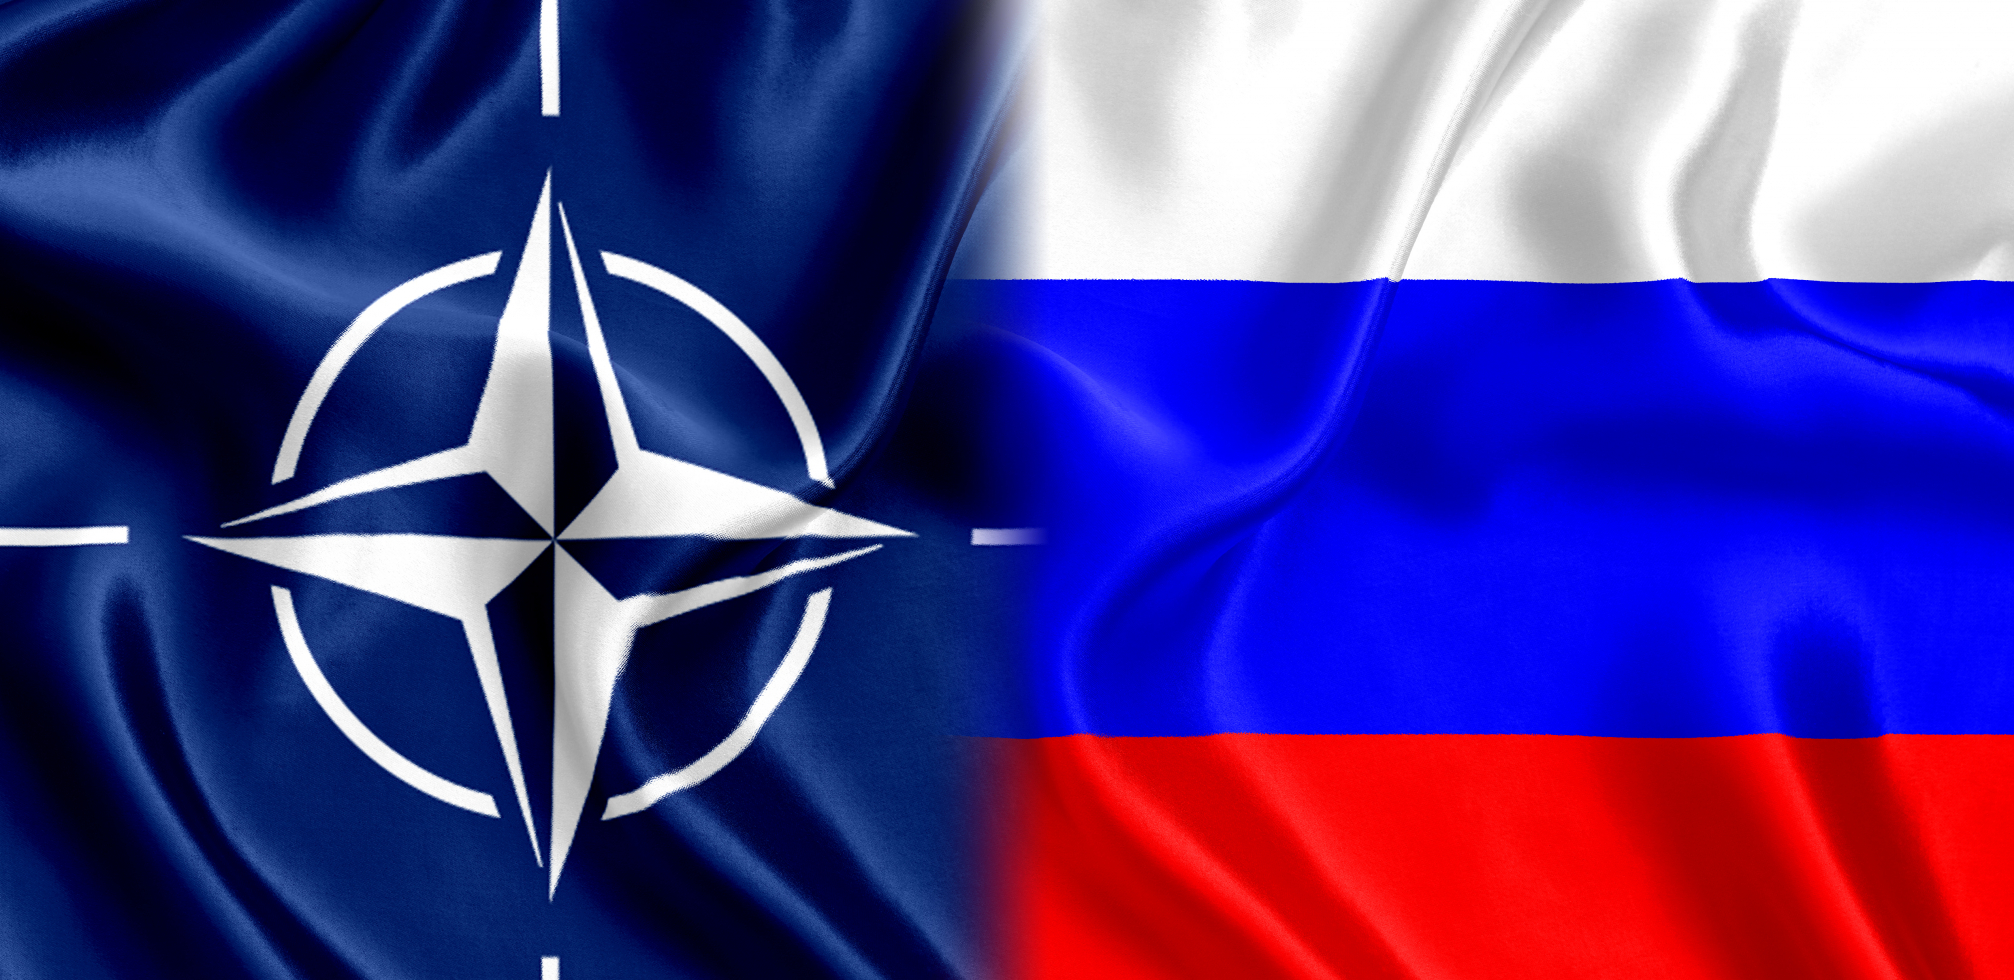 NATO UPOZORAVA Rusija će platiti VISOKU CENU!